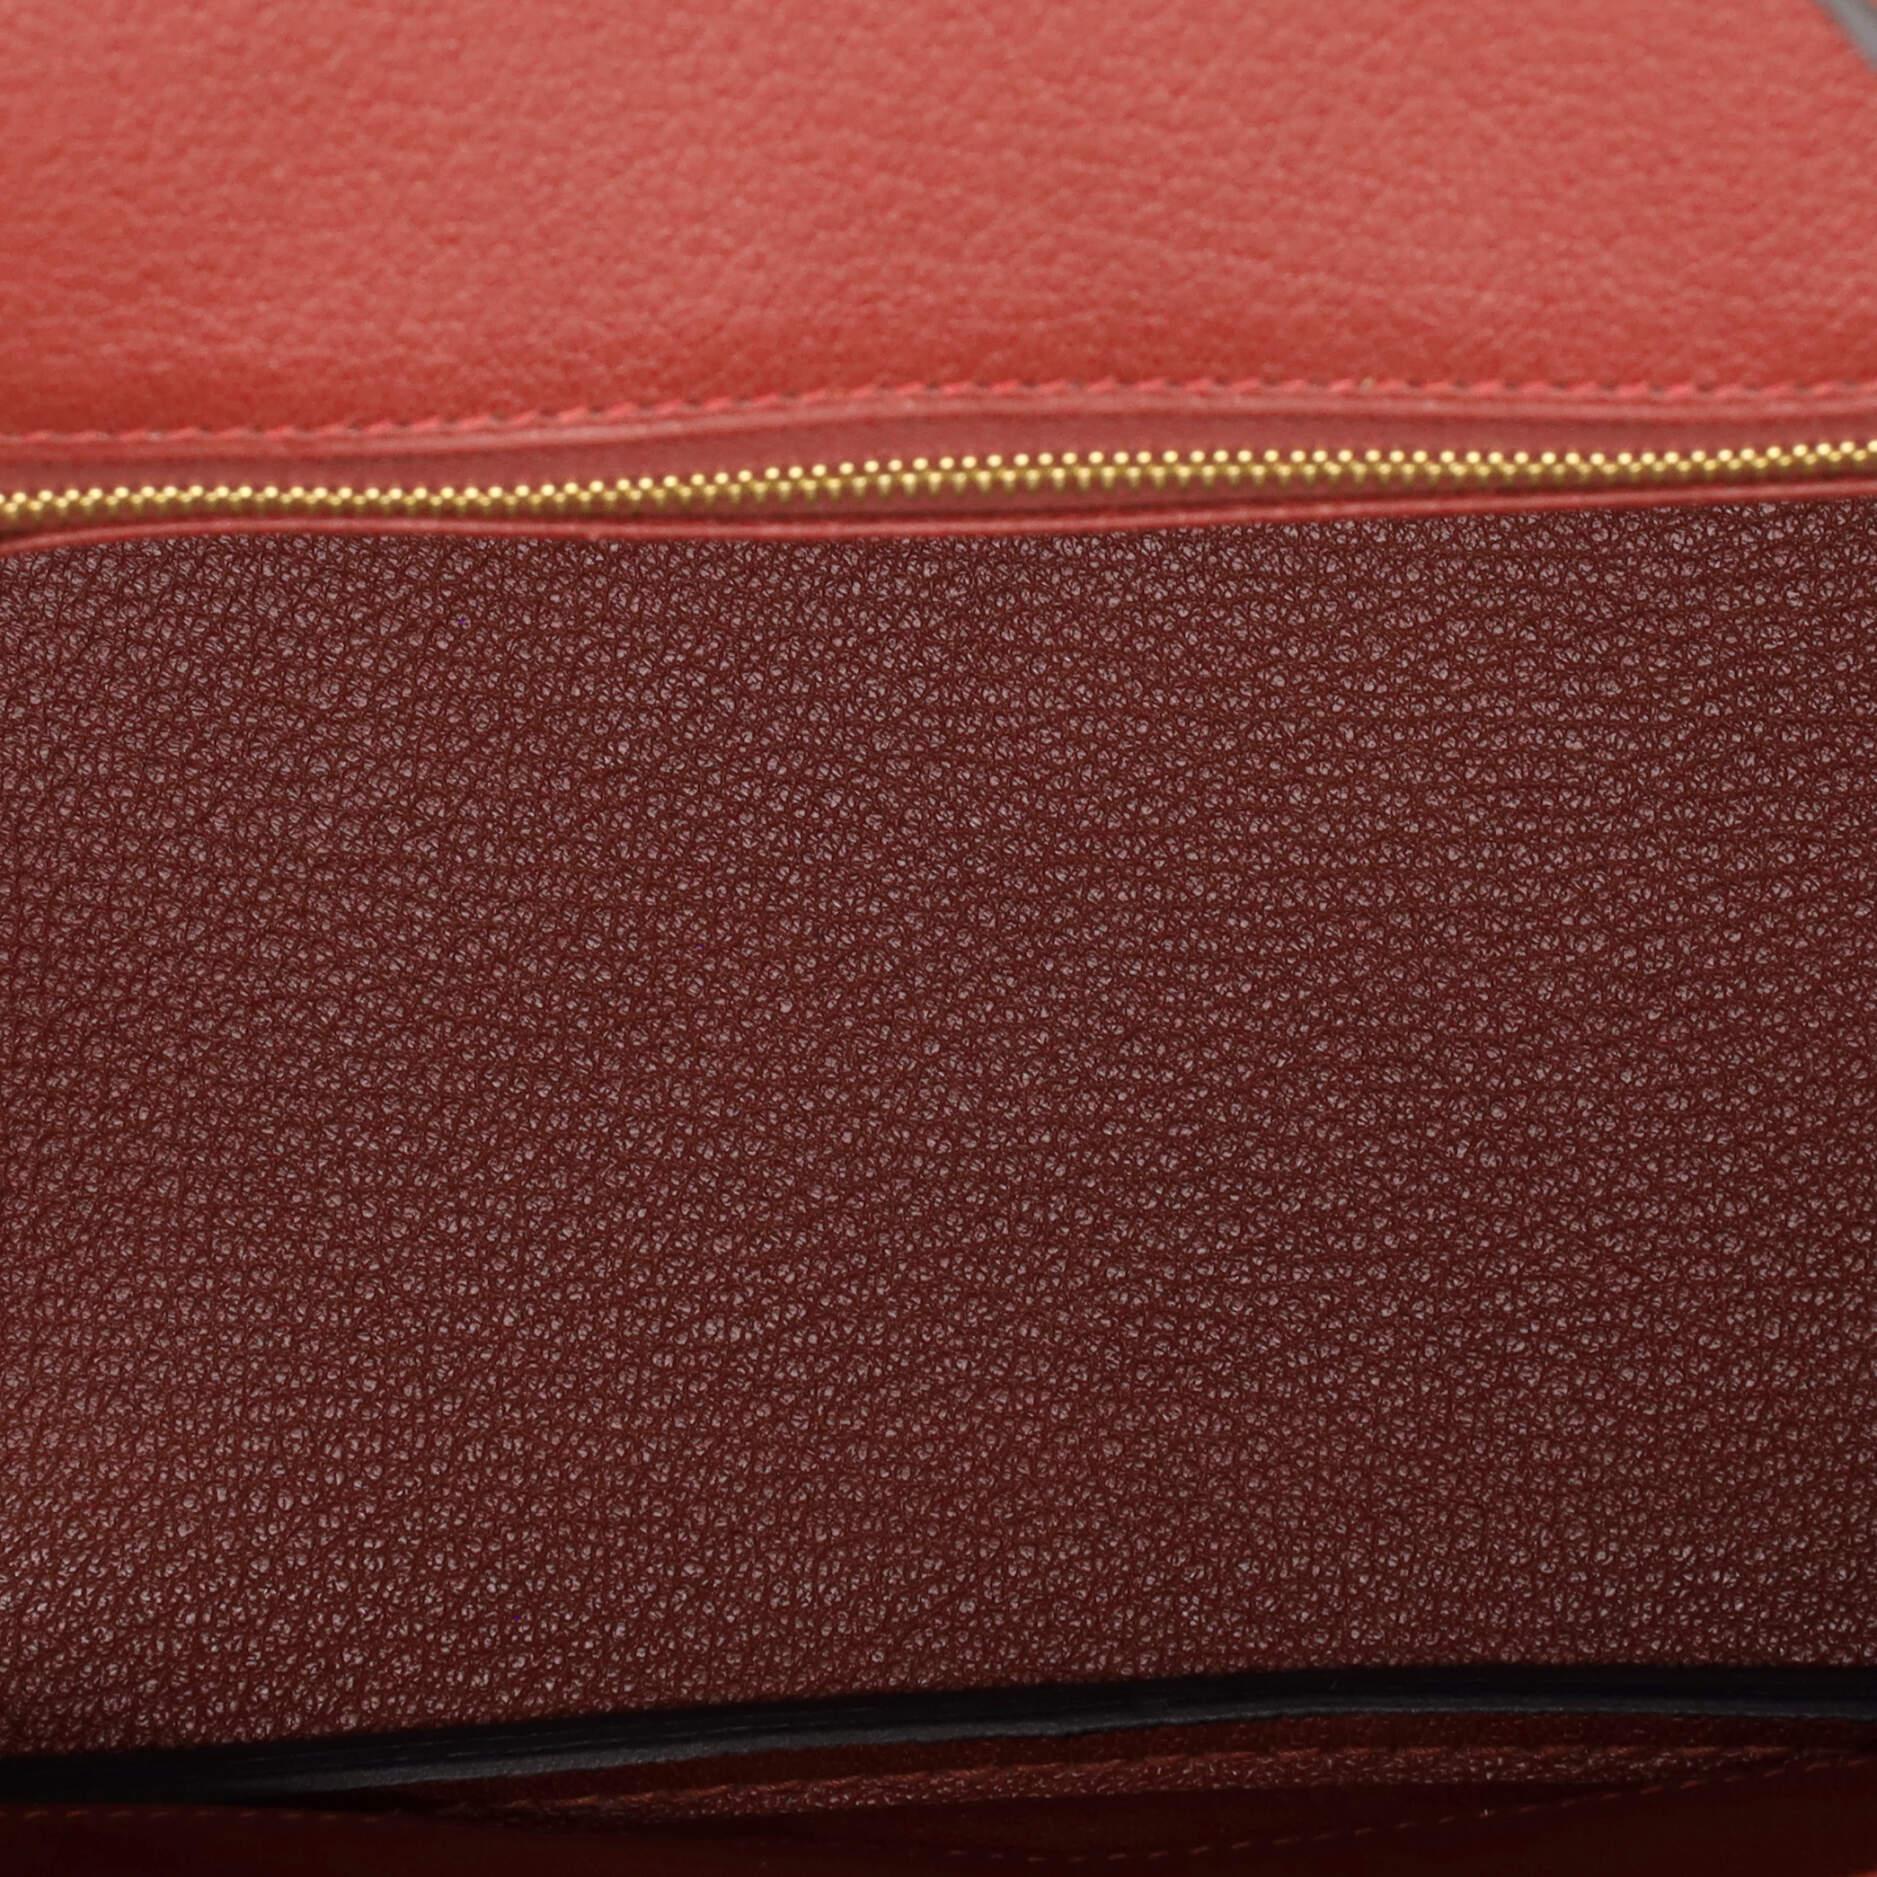 Hermes Birkin Handbag Rouge H Togo with Gold Hardware 25 2